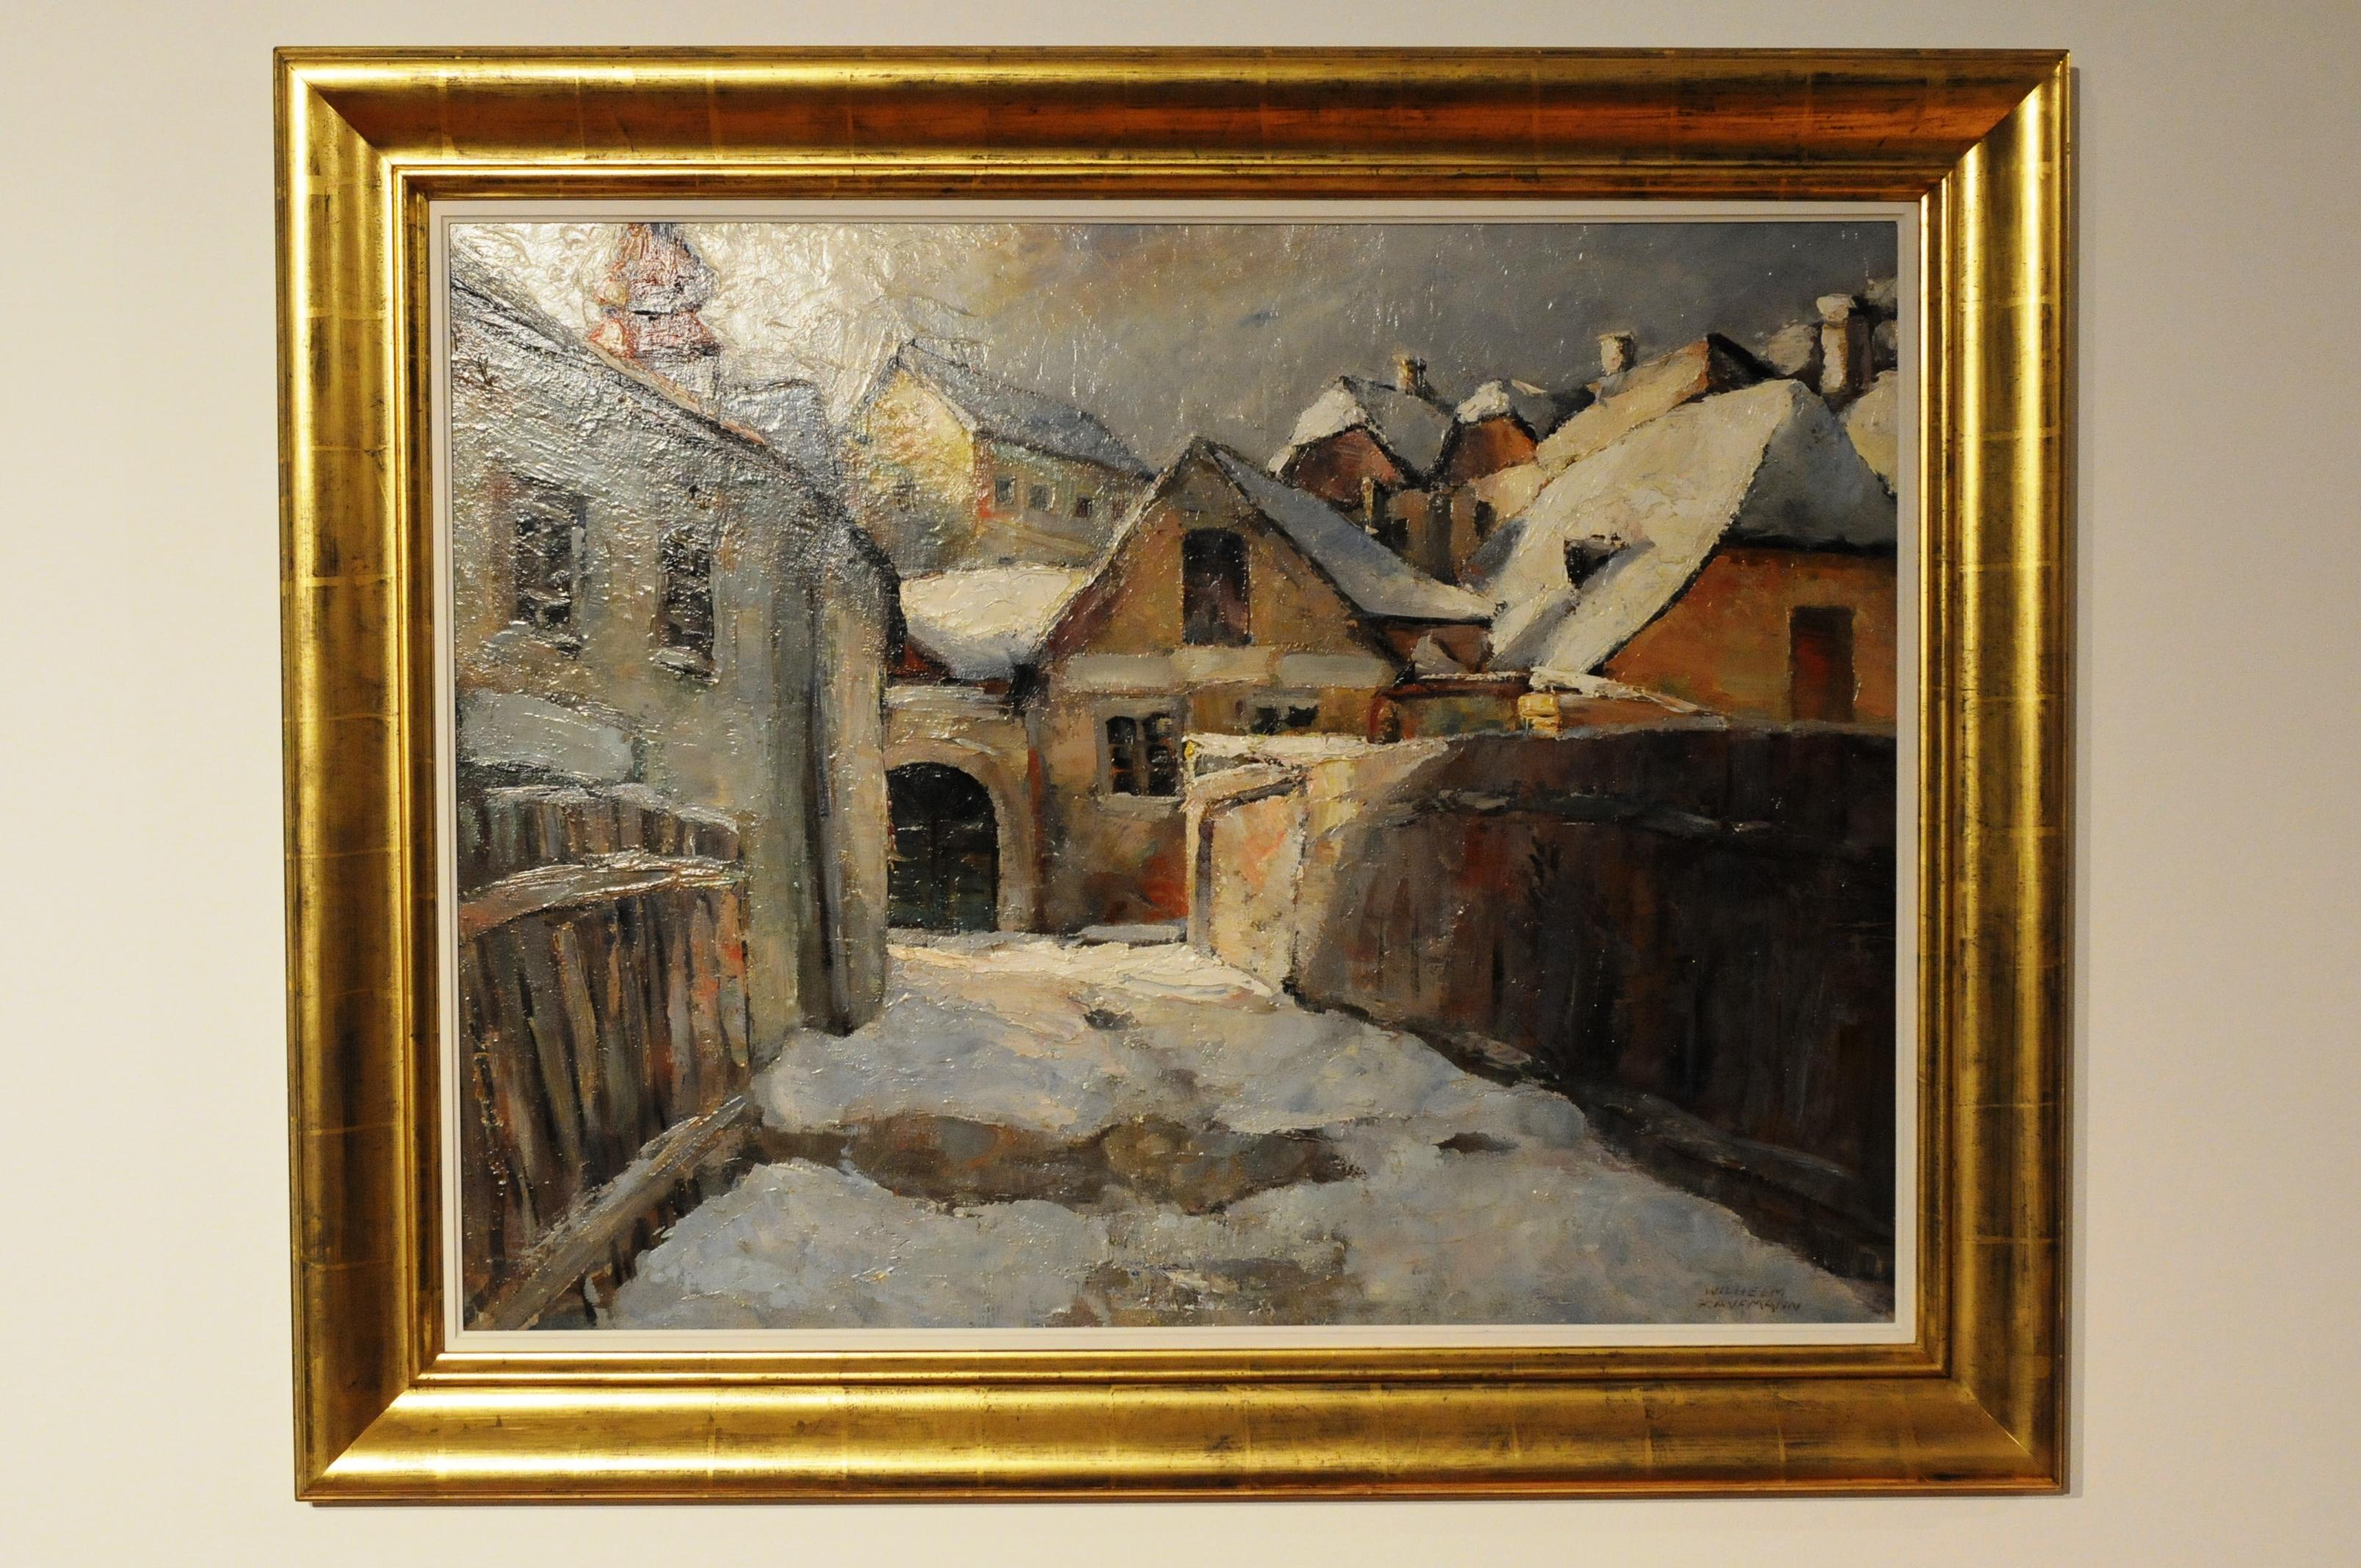 Village in Wintertime - Dorf im Winter - Painting by Wilhelm Kaufmann